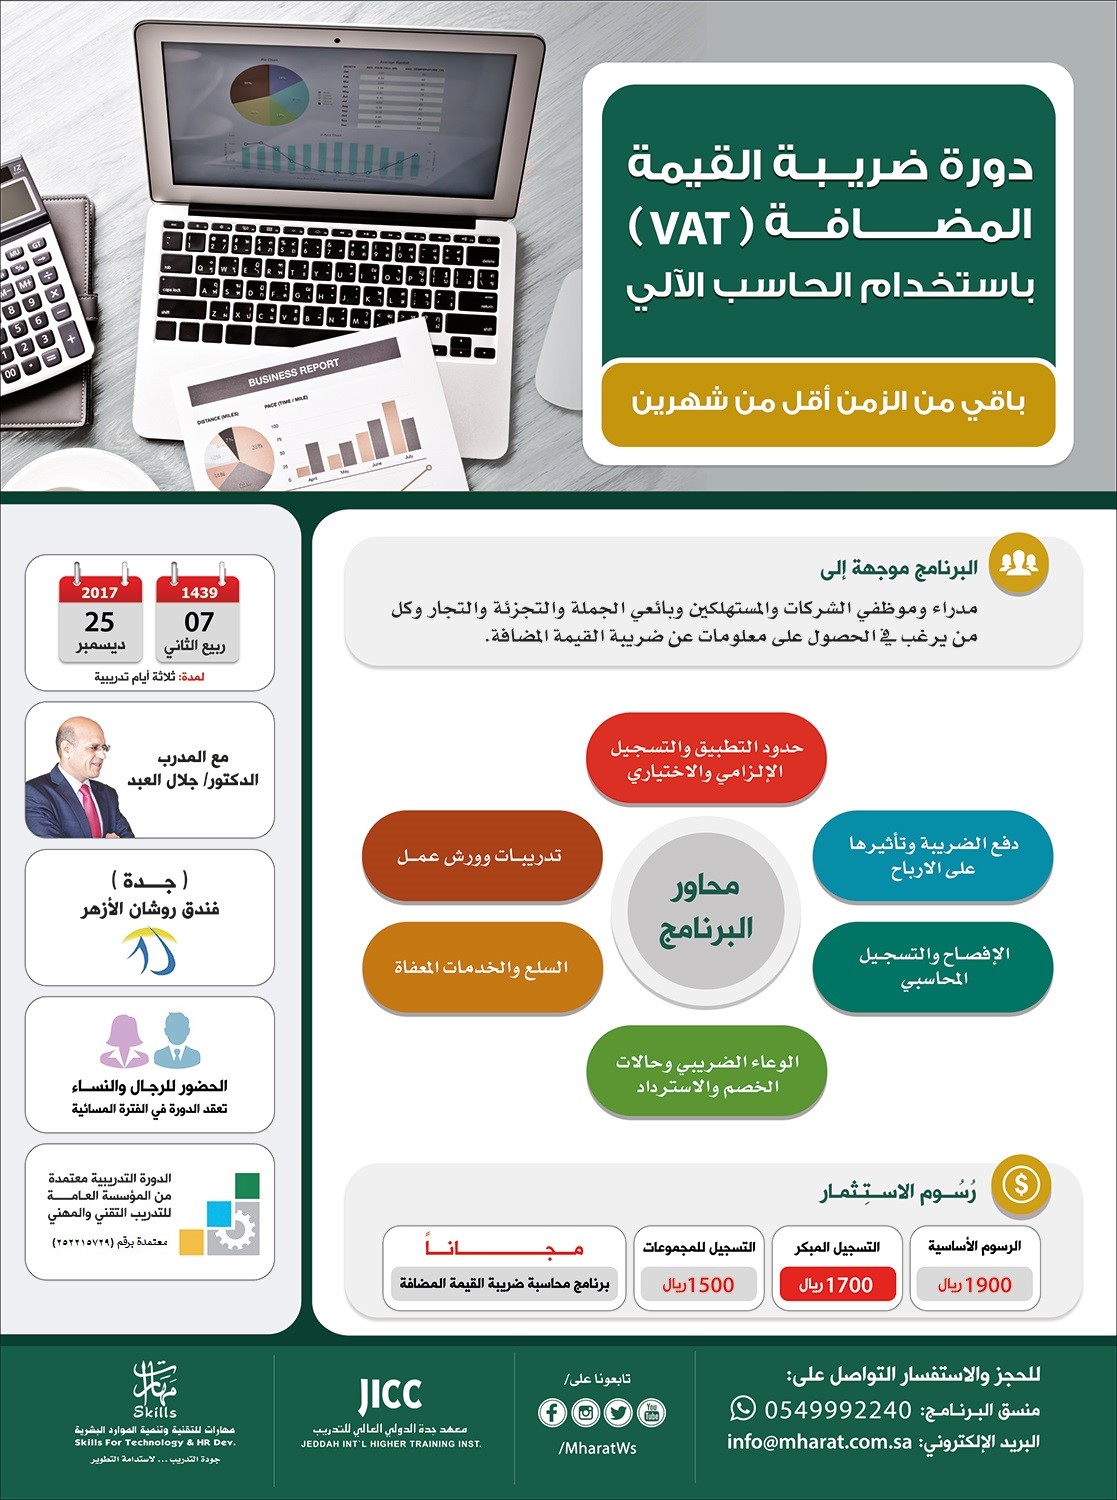 دورة ضريبة القيمة المضافة VAT P_715dcxig1